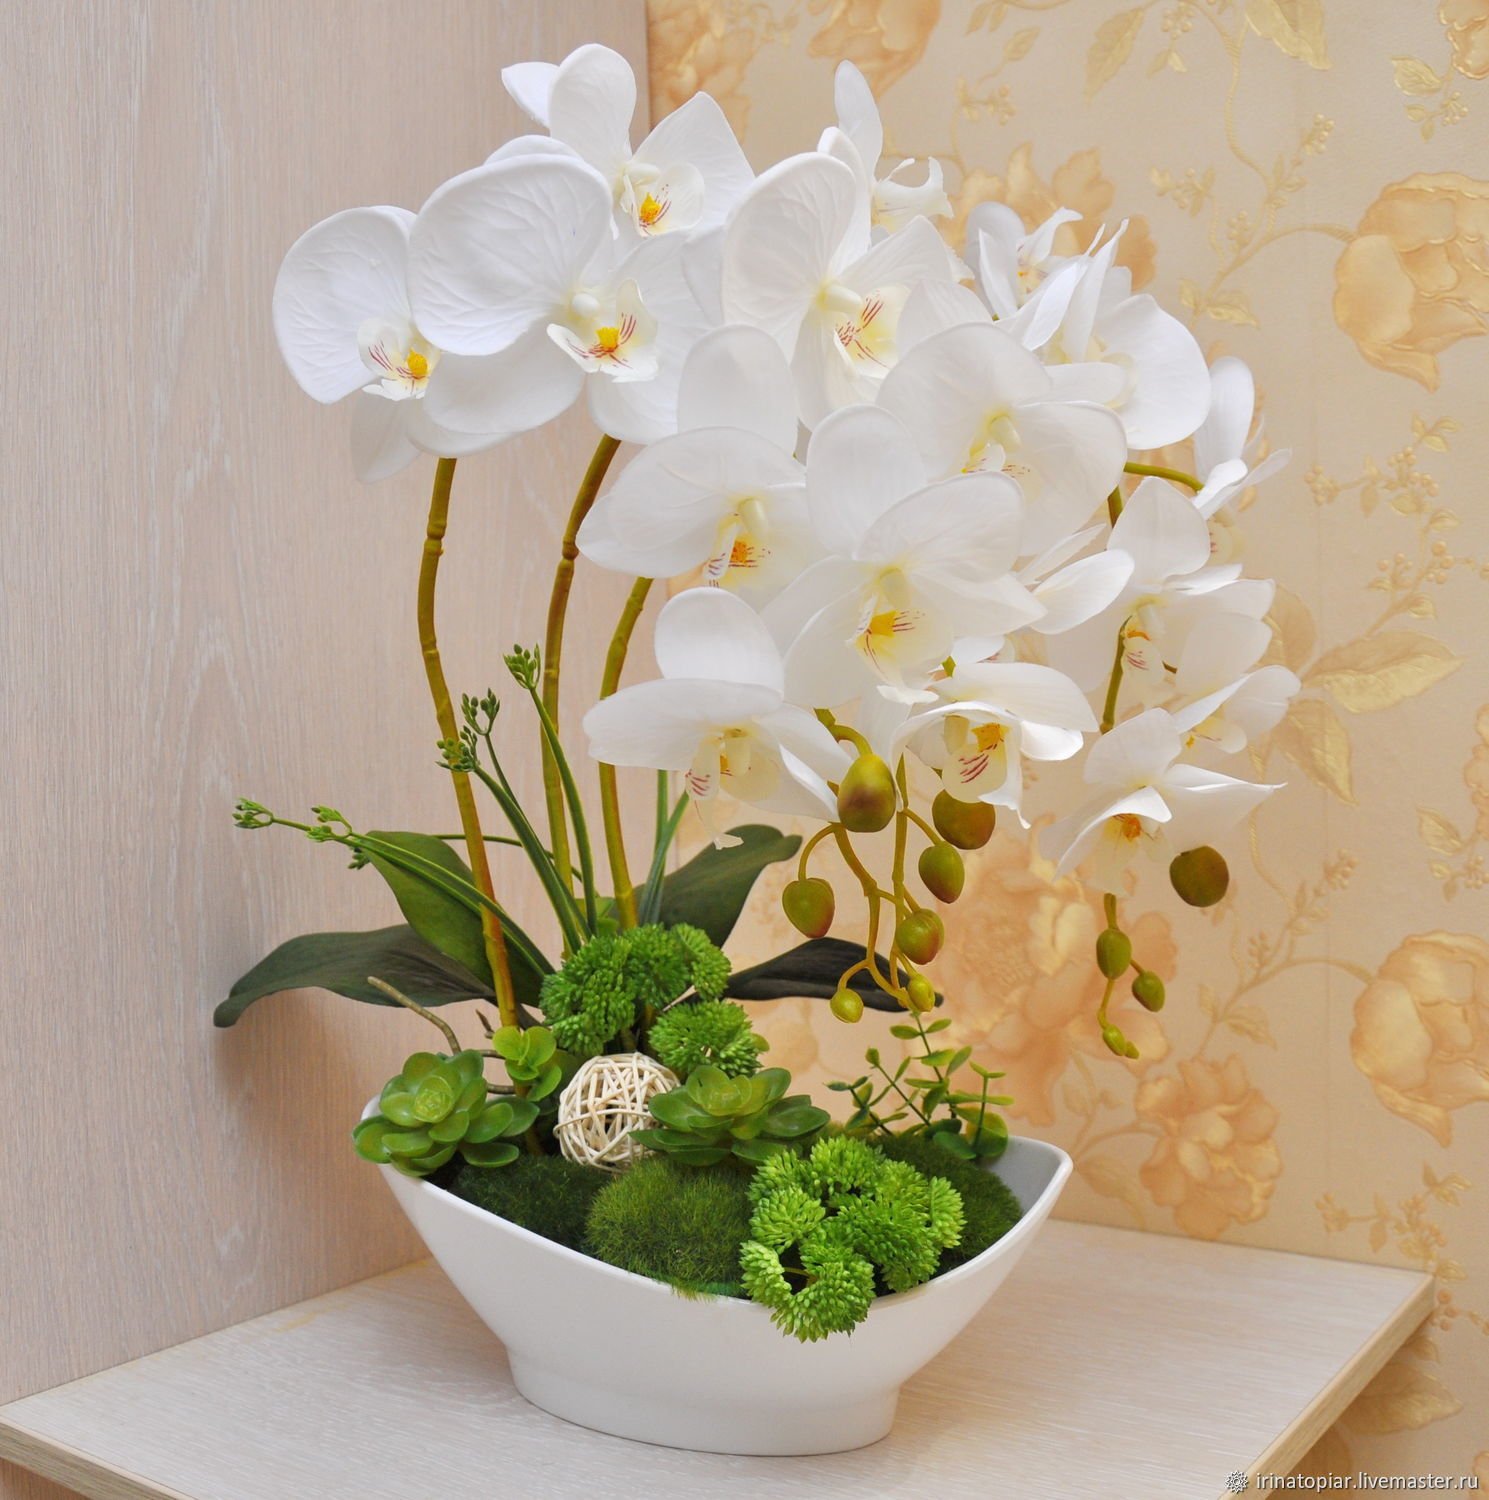 Живые цветы интернет магазин. Фаленопсис Рефлекшн. Композиции с орхидеей фаленопсис. Орхидея фаленопсис белая композиция. Композиции из искусственных орхидей для интерьера.